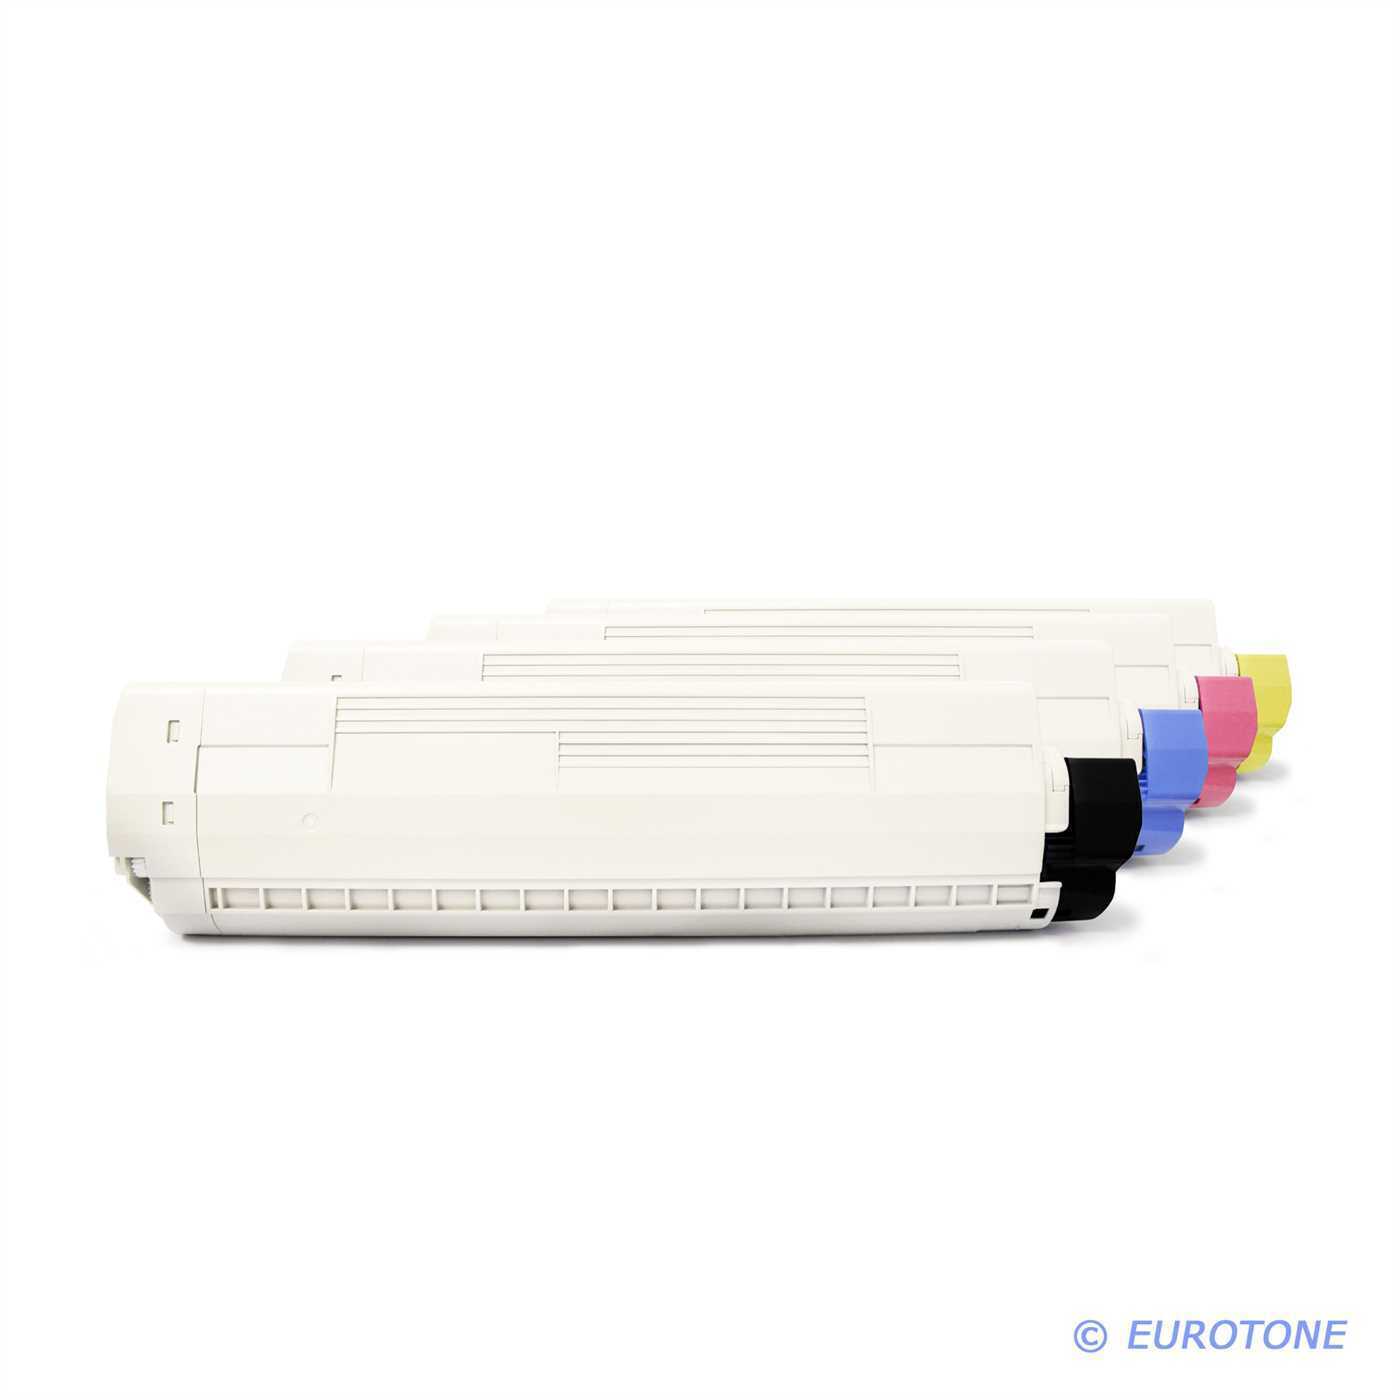 4x Eurotone Eco Cartridge for OKI C-9650-HN C-9800-HN C-9650-HDTN C-9600-N